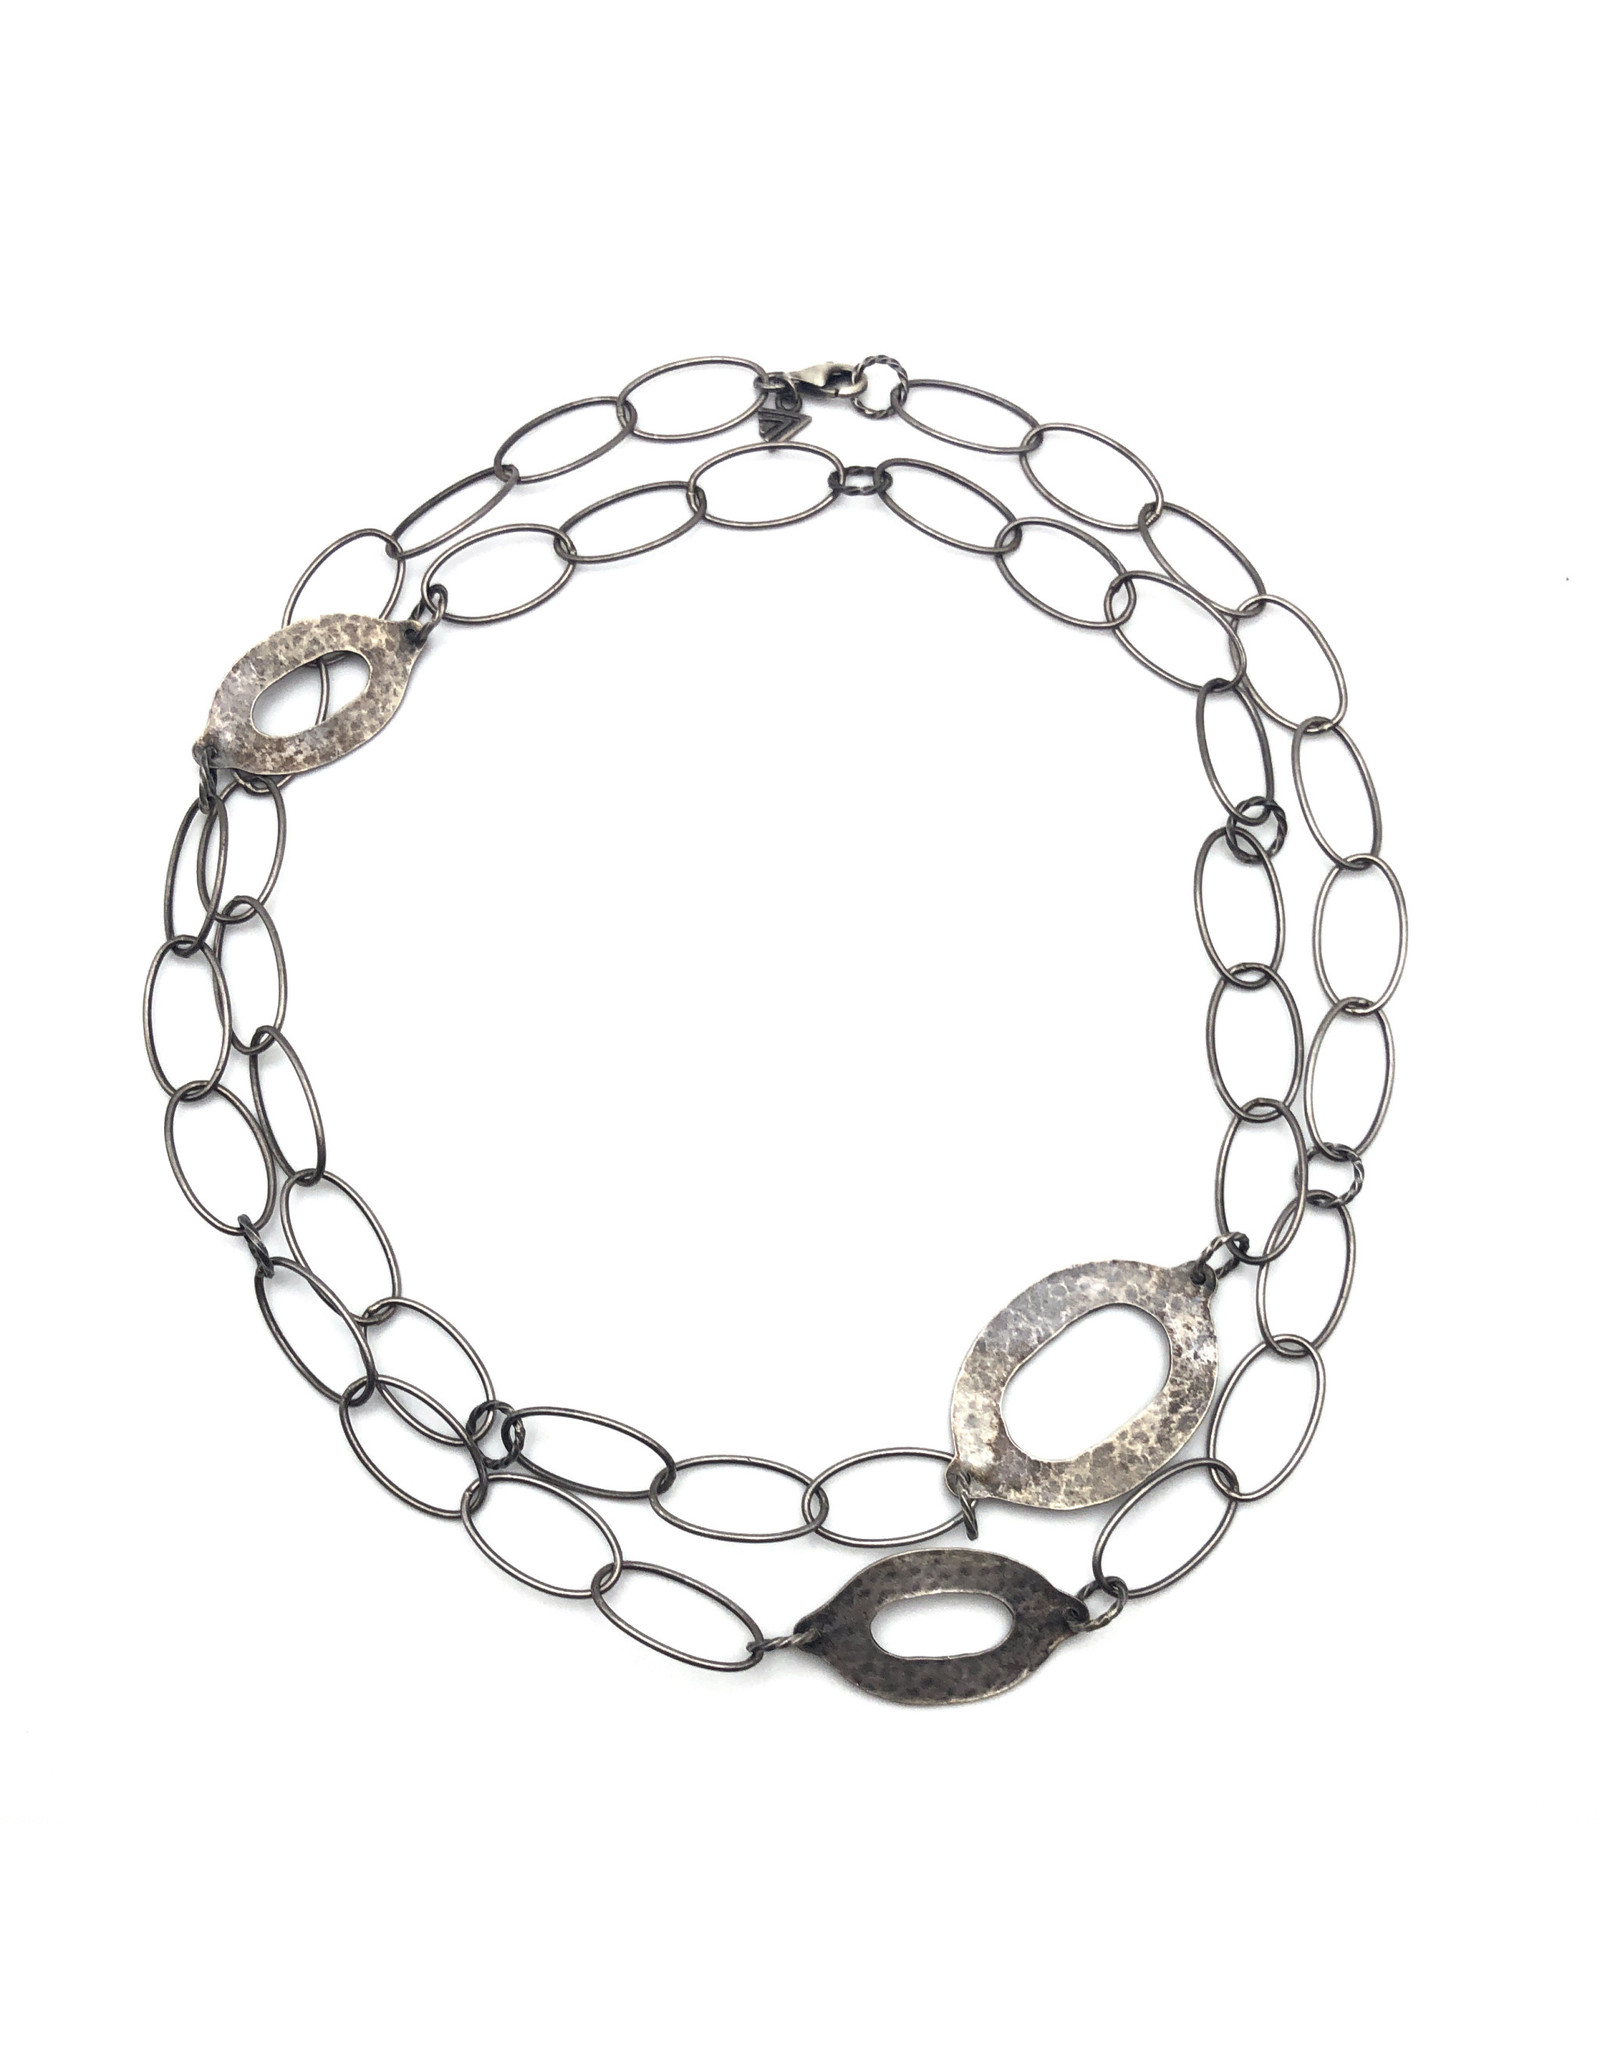 Antiqued Sterling Designer Necklace with Large Links